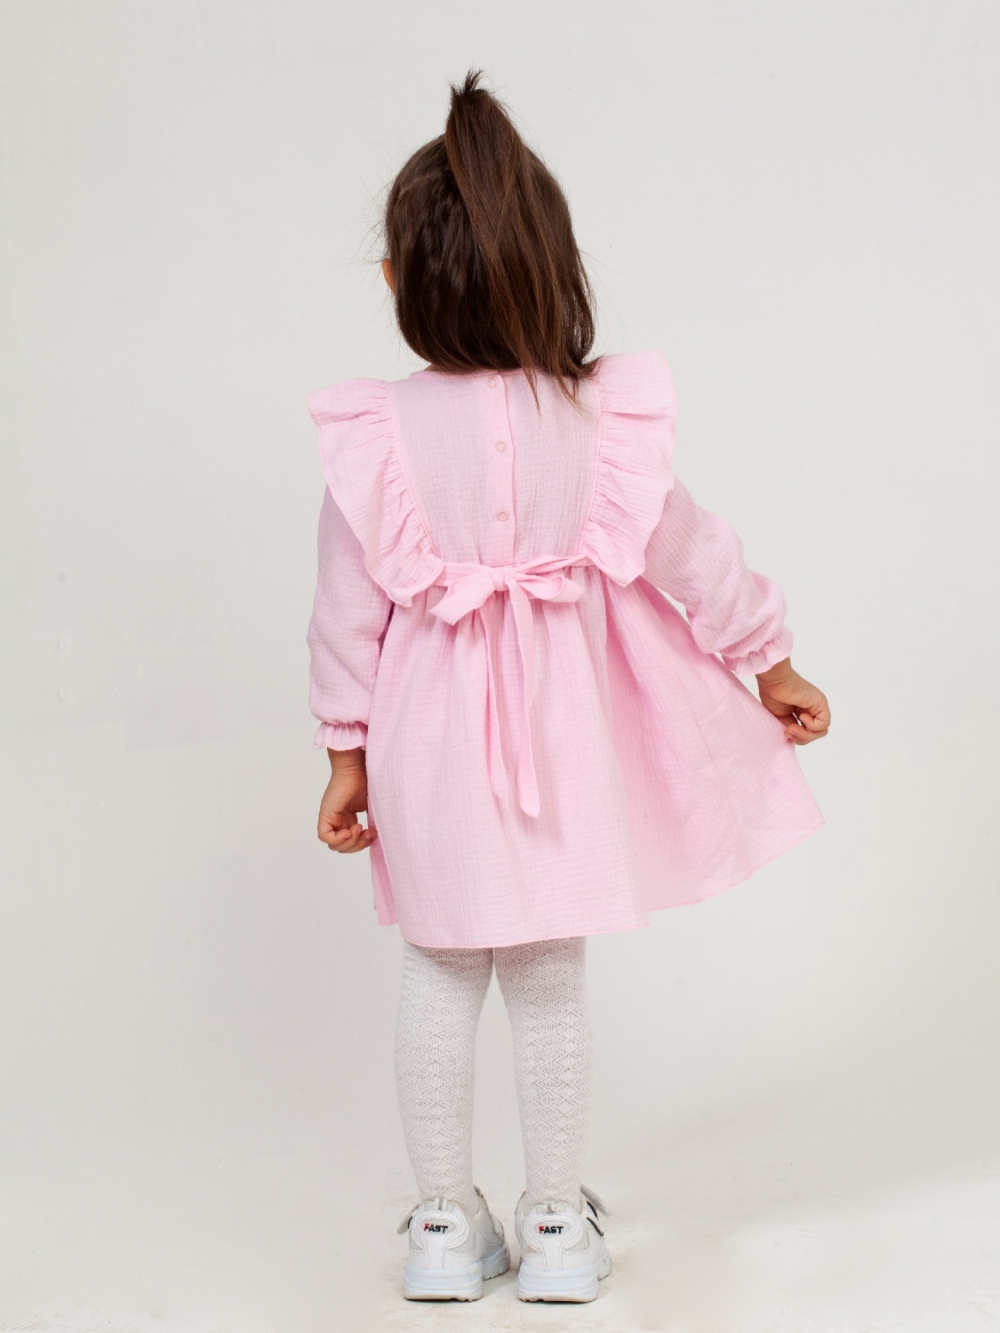 321-Р. Платье из муслина детское, хлопок 100% розовый, р. 98,104,110,116